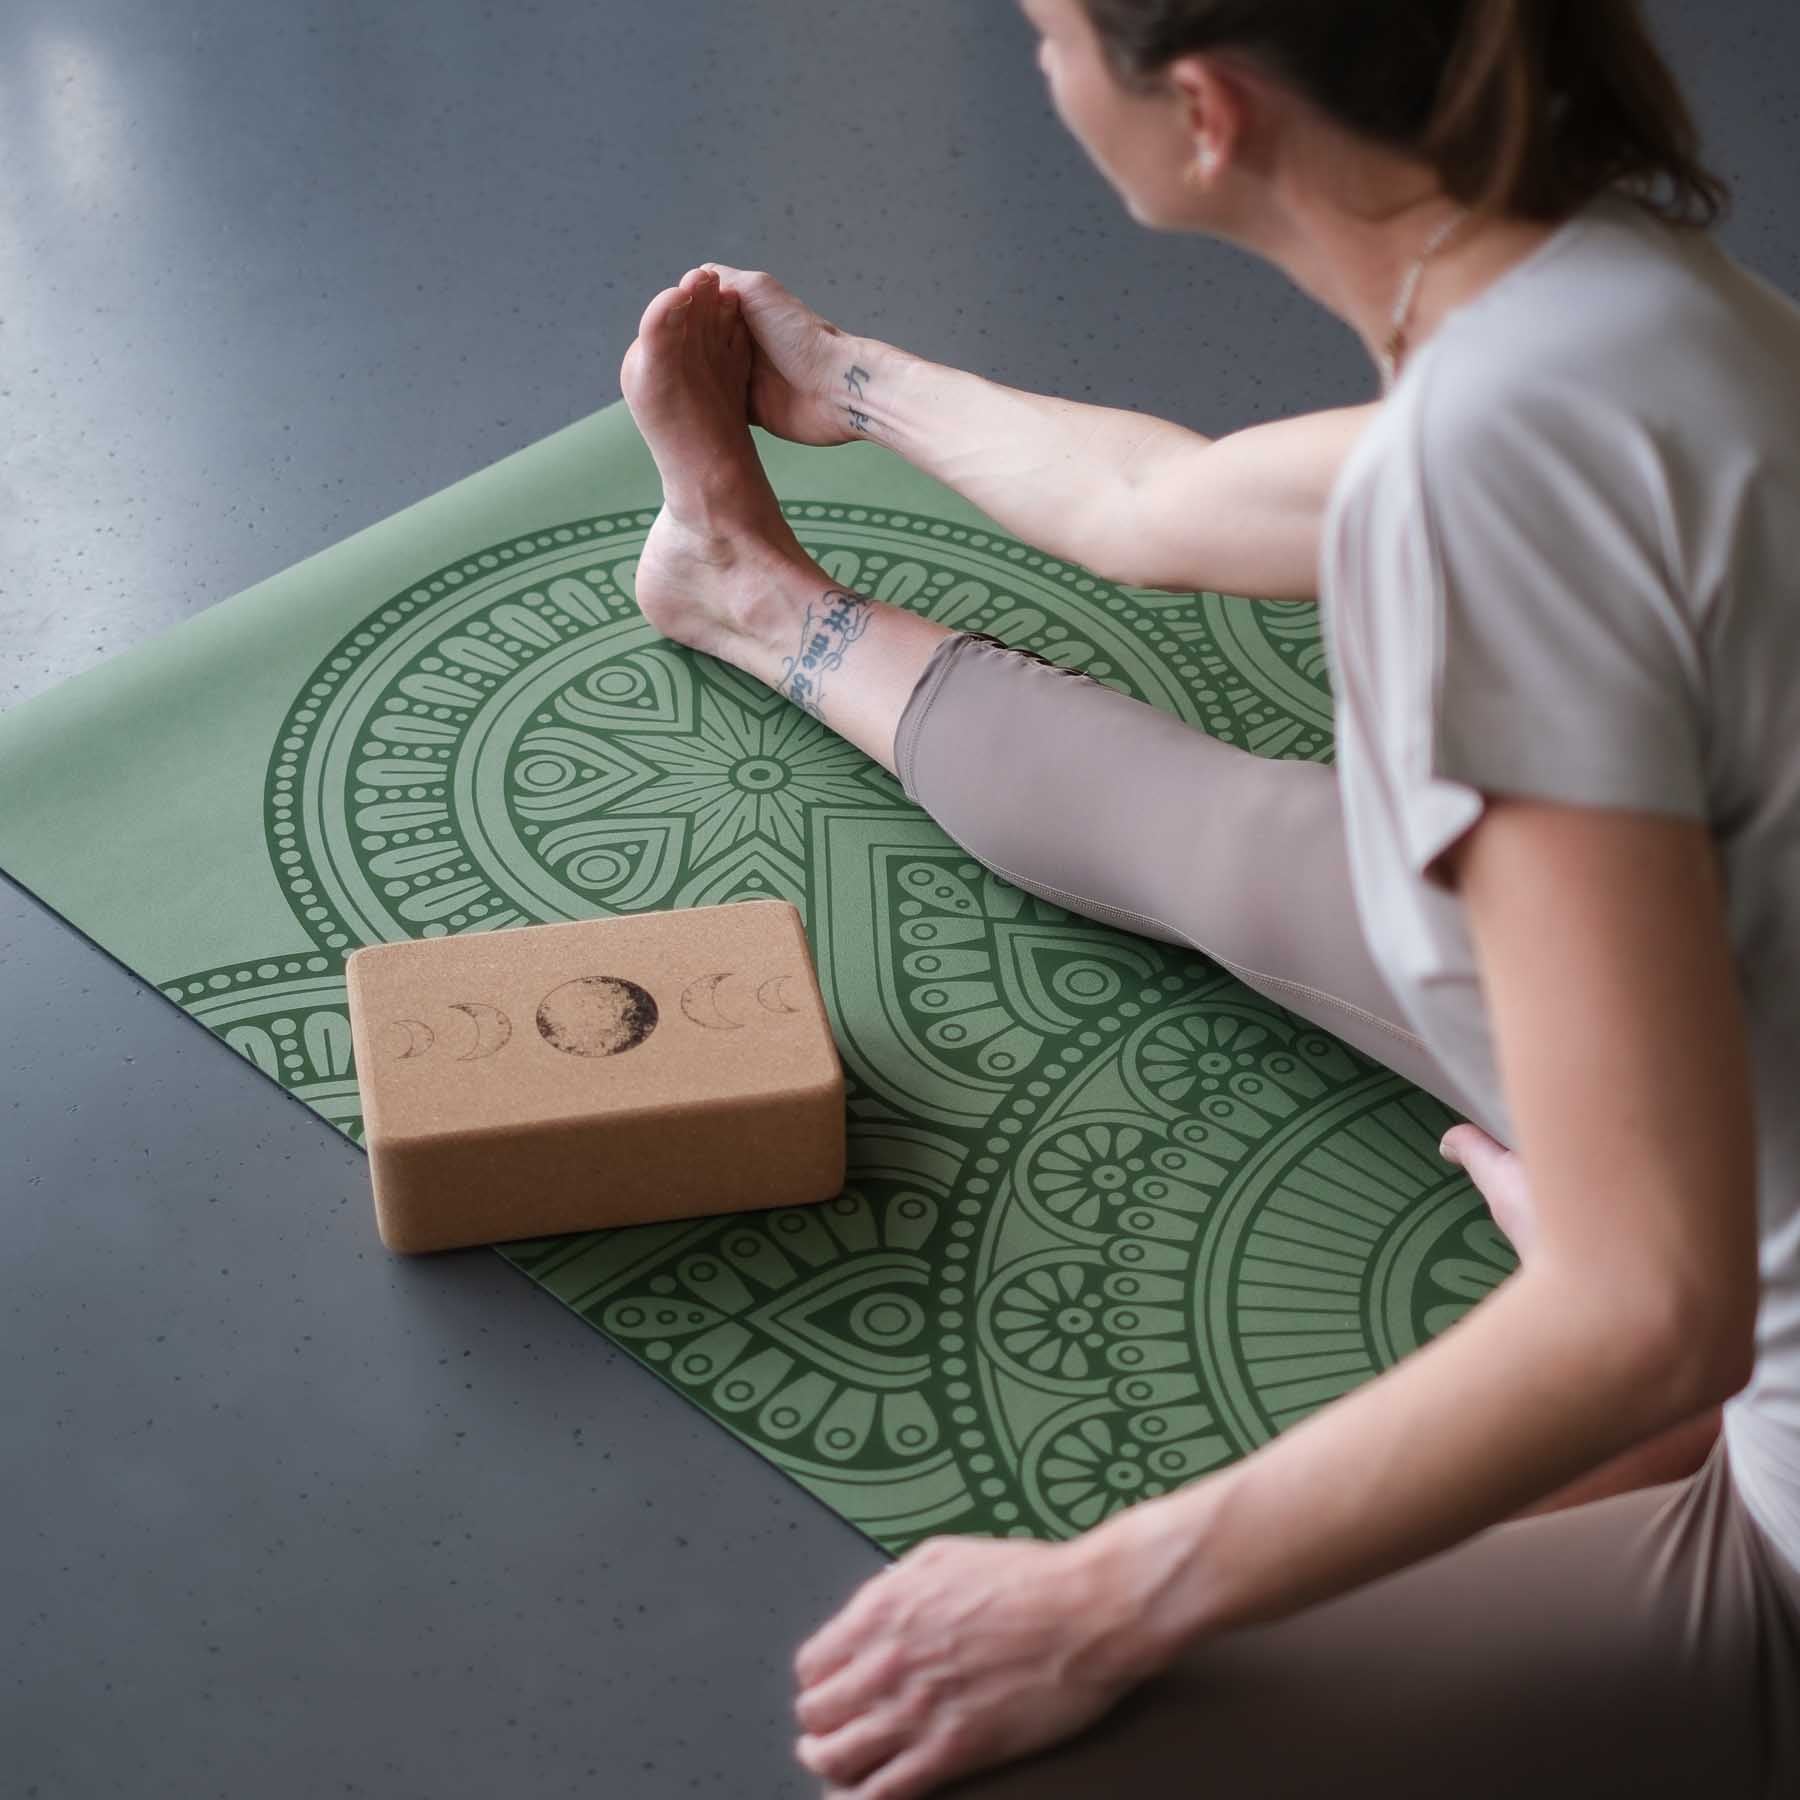 Tapis de yoga SuperGrip 2.0 Mandala tapis de yoga très antidérapant apple en caoutchouc naturel avec une bonne tenue